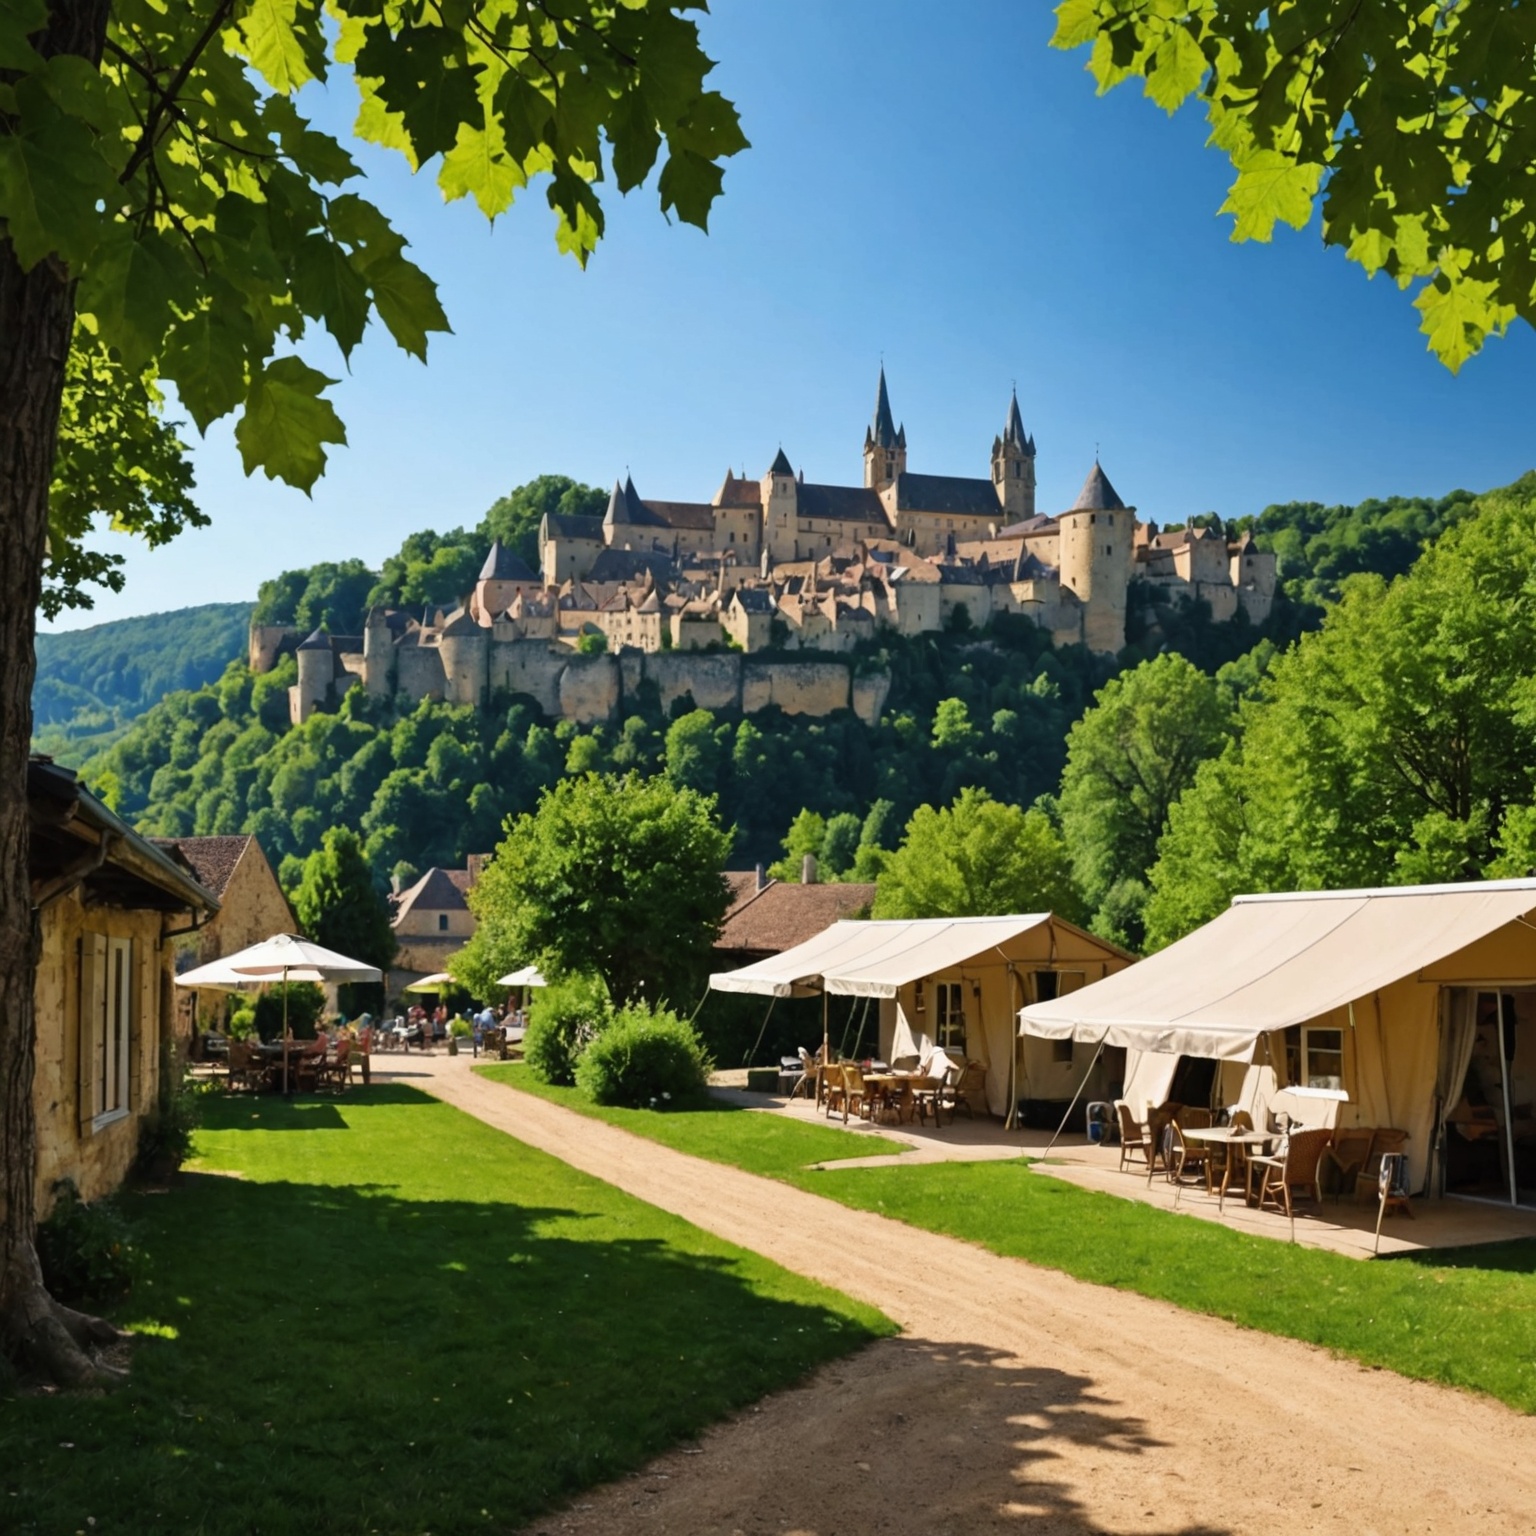 Découvrez la Meilleure Destination pour Louer un Mobil-home à Sarlat : Votre Guide Ultime de Camping en Dordogne